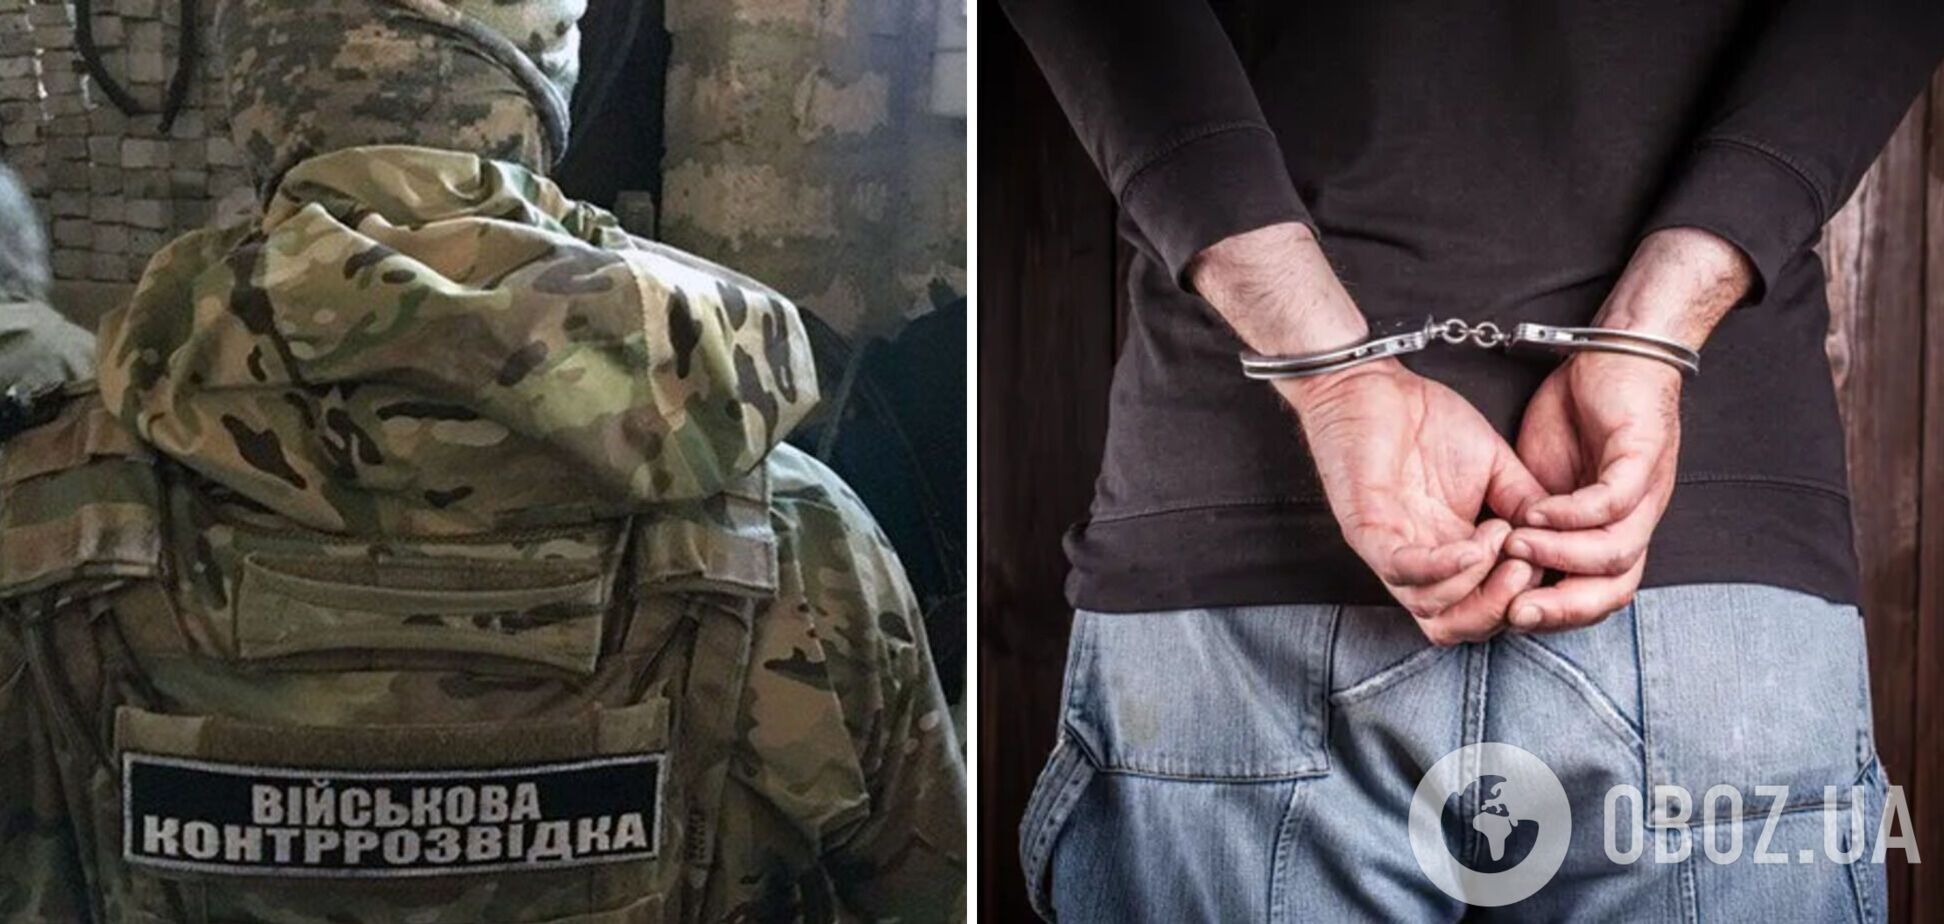 На Волыни задержан шпион, который собирал для оккупантов данные об ВСУ и мобилизации в регионе. Видео